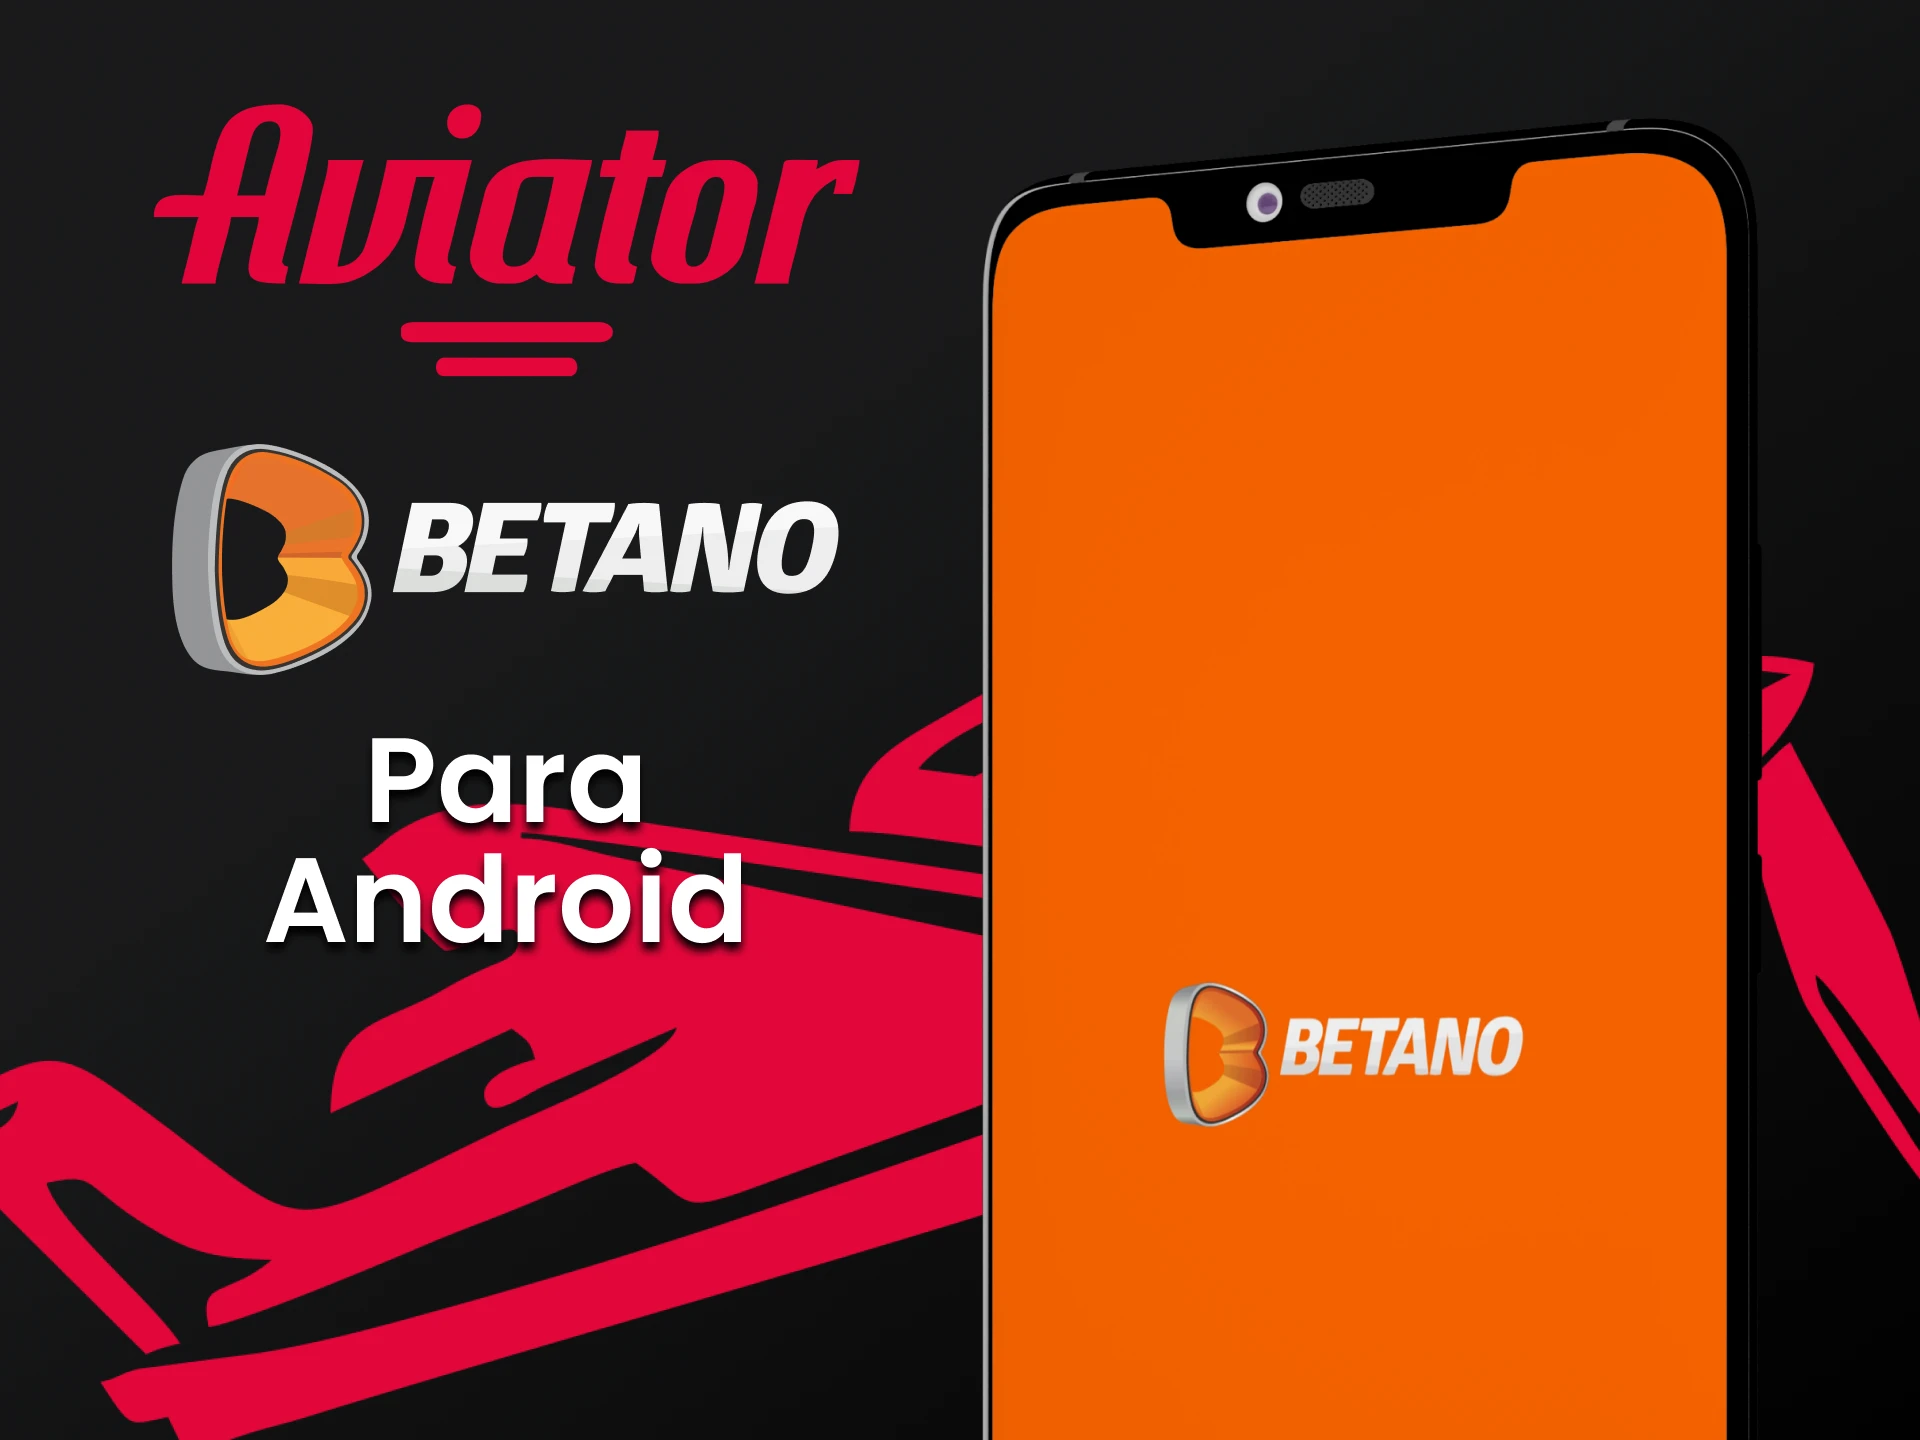 Baixe o aplicativo Betano para jogar Aviator no Android.